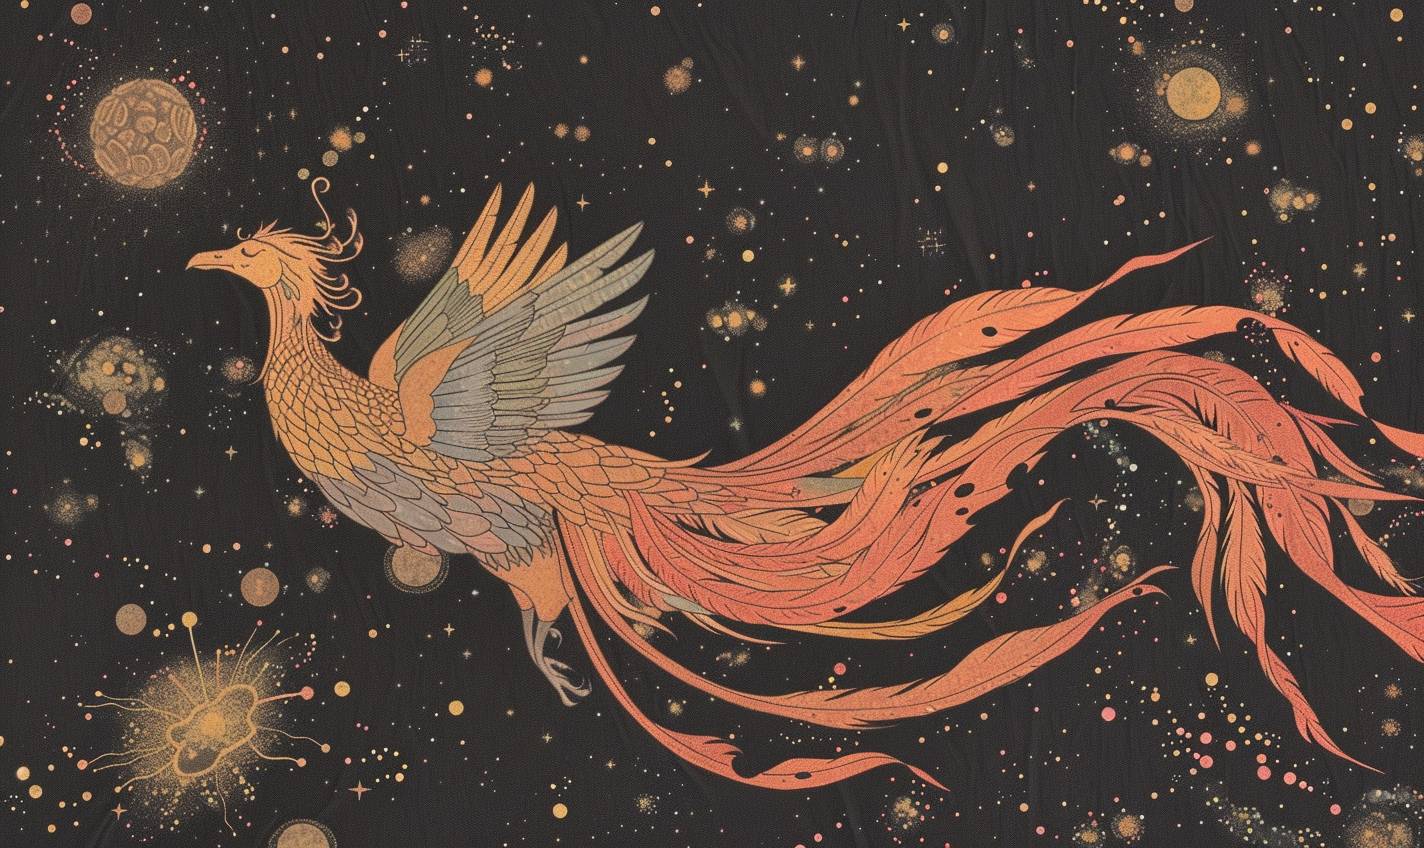 ハリエット・リー＝メリオンのスタイルで、宇宙を滑る宇宙の不死鳥